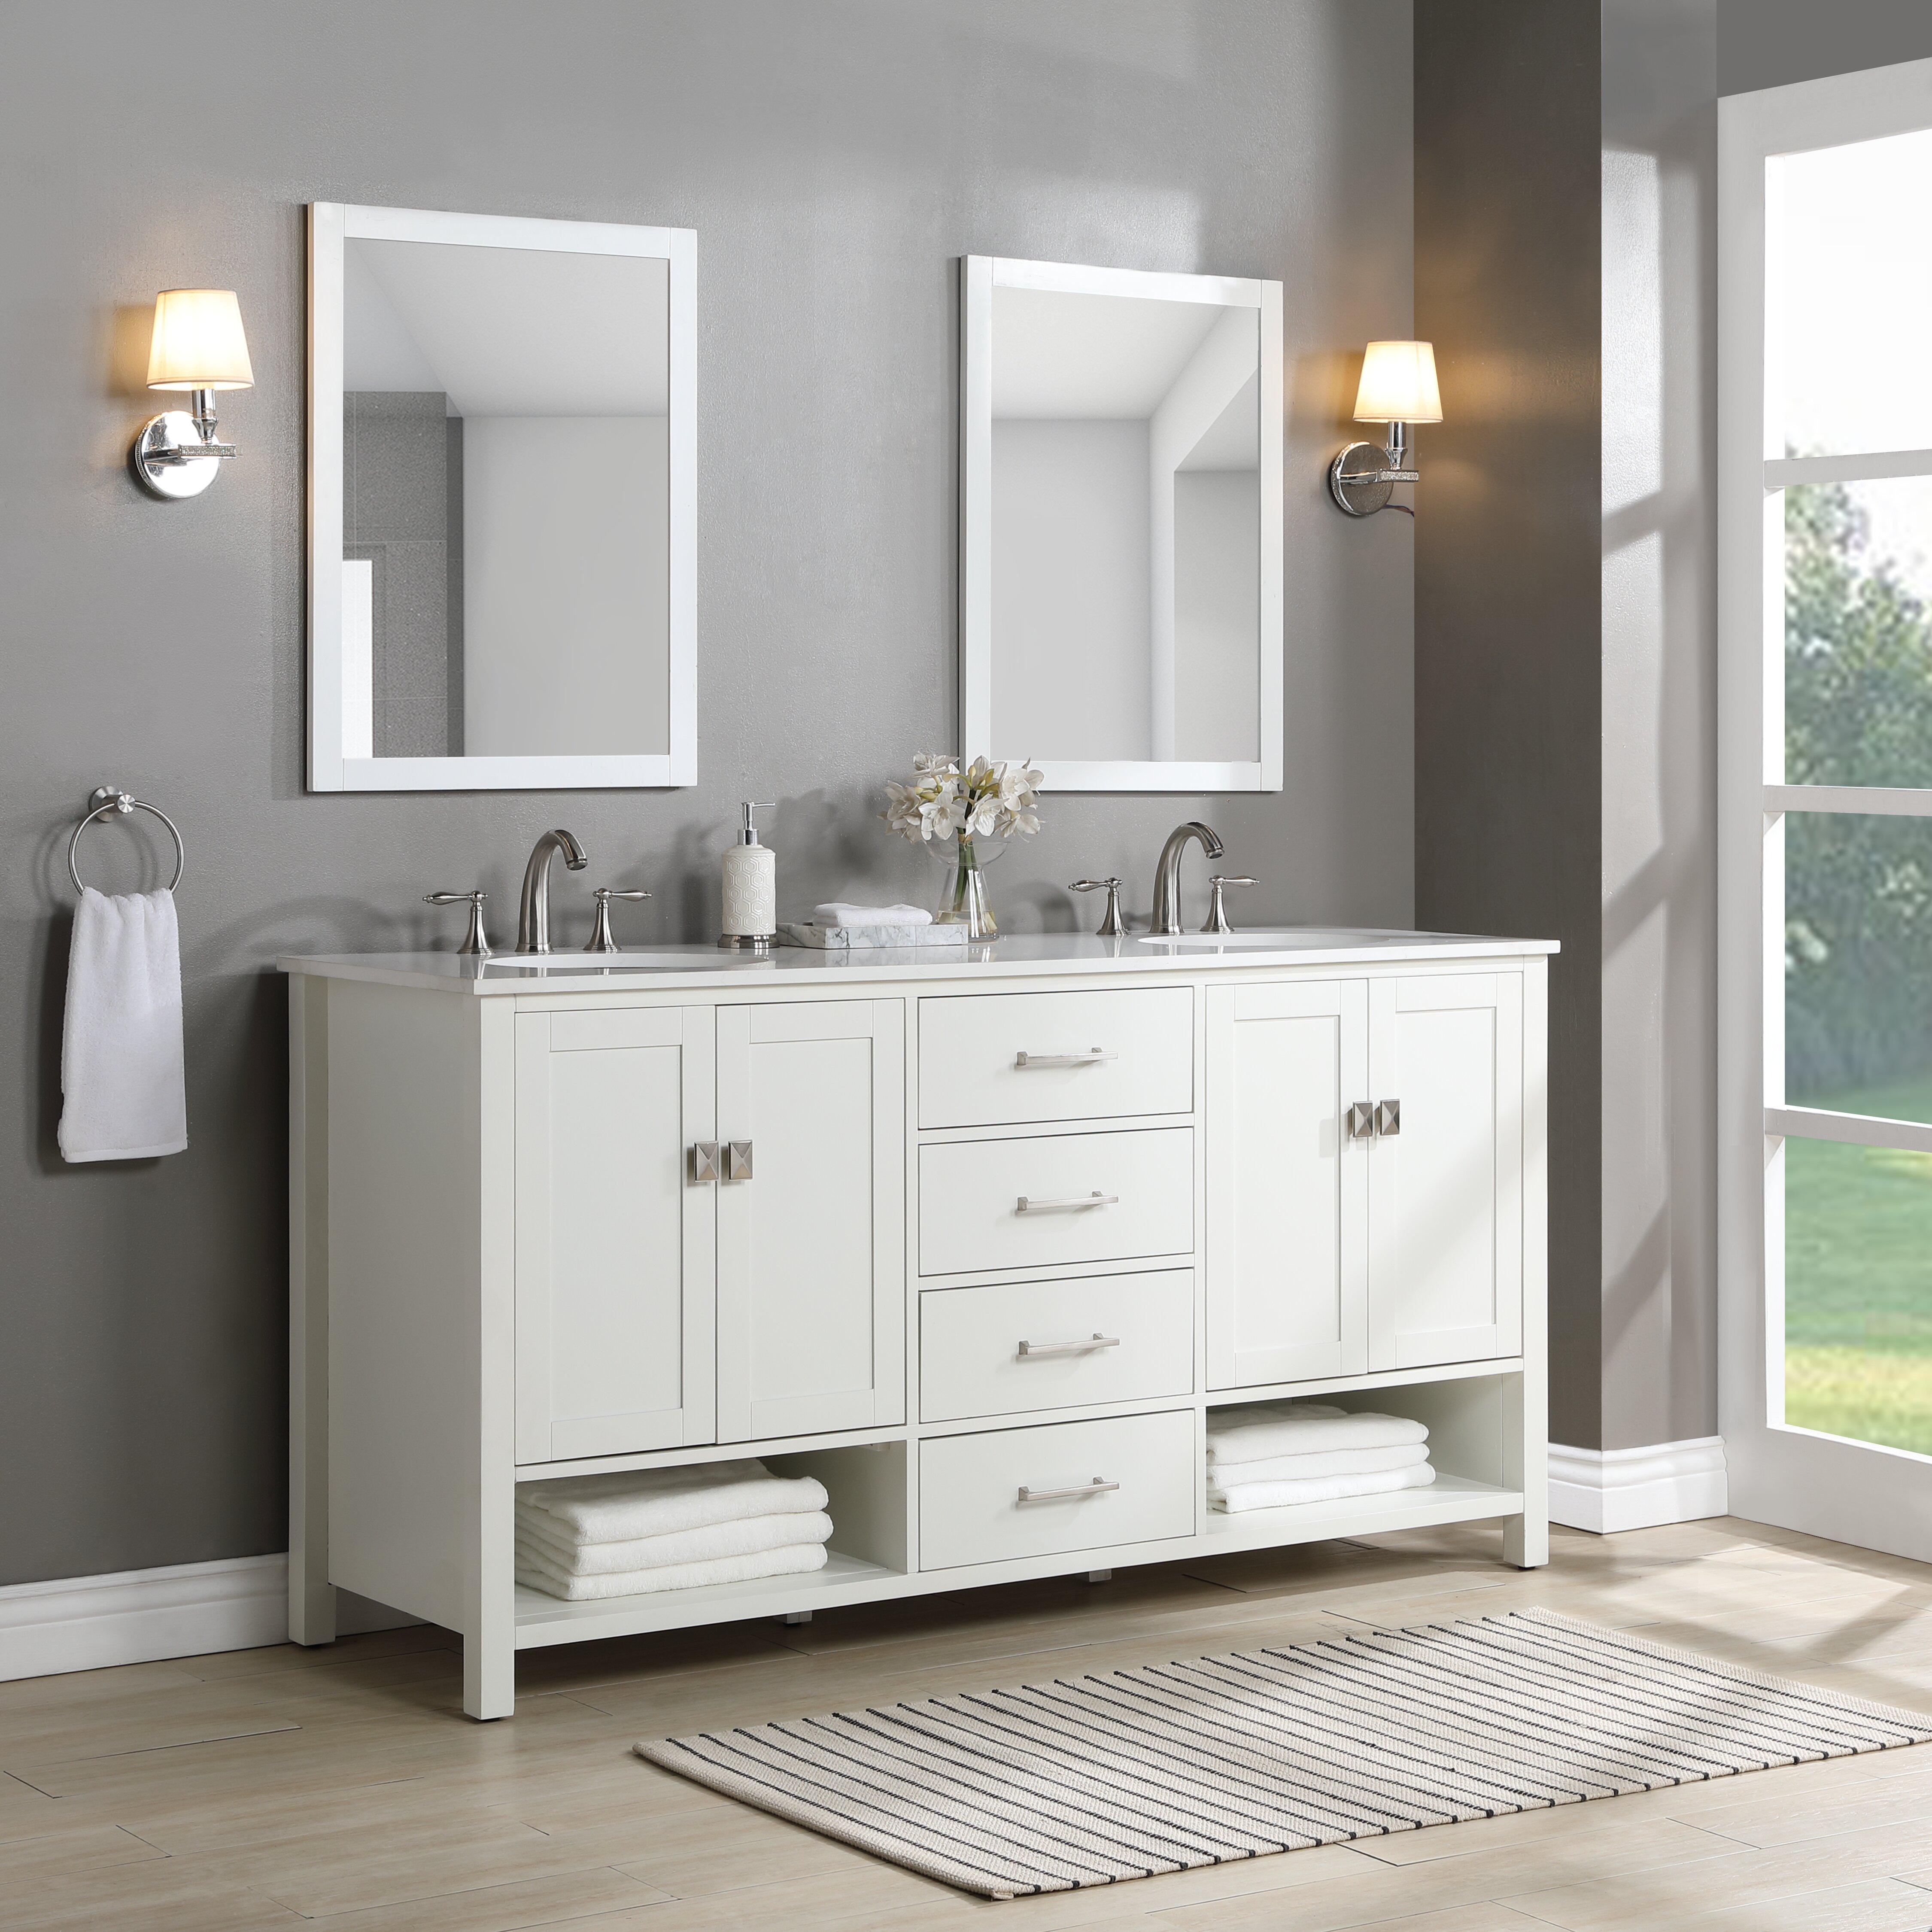 Zipcode Design Skye 72 Double Bathroom Vanity Reviews Wayfairca